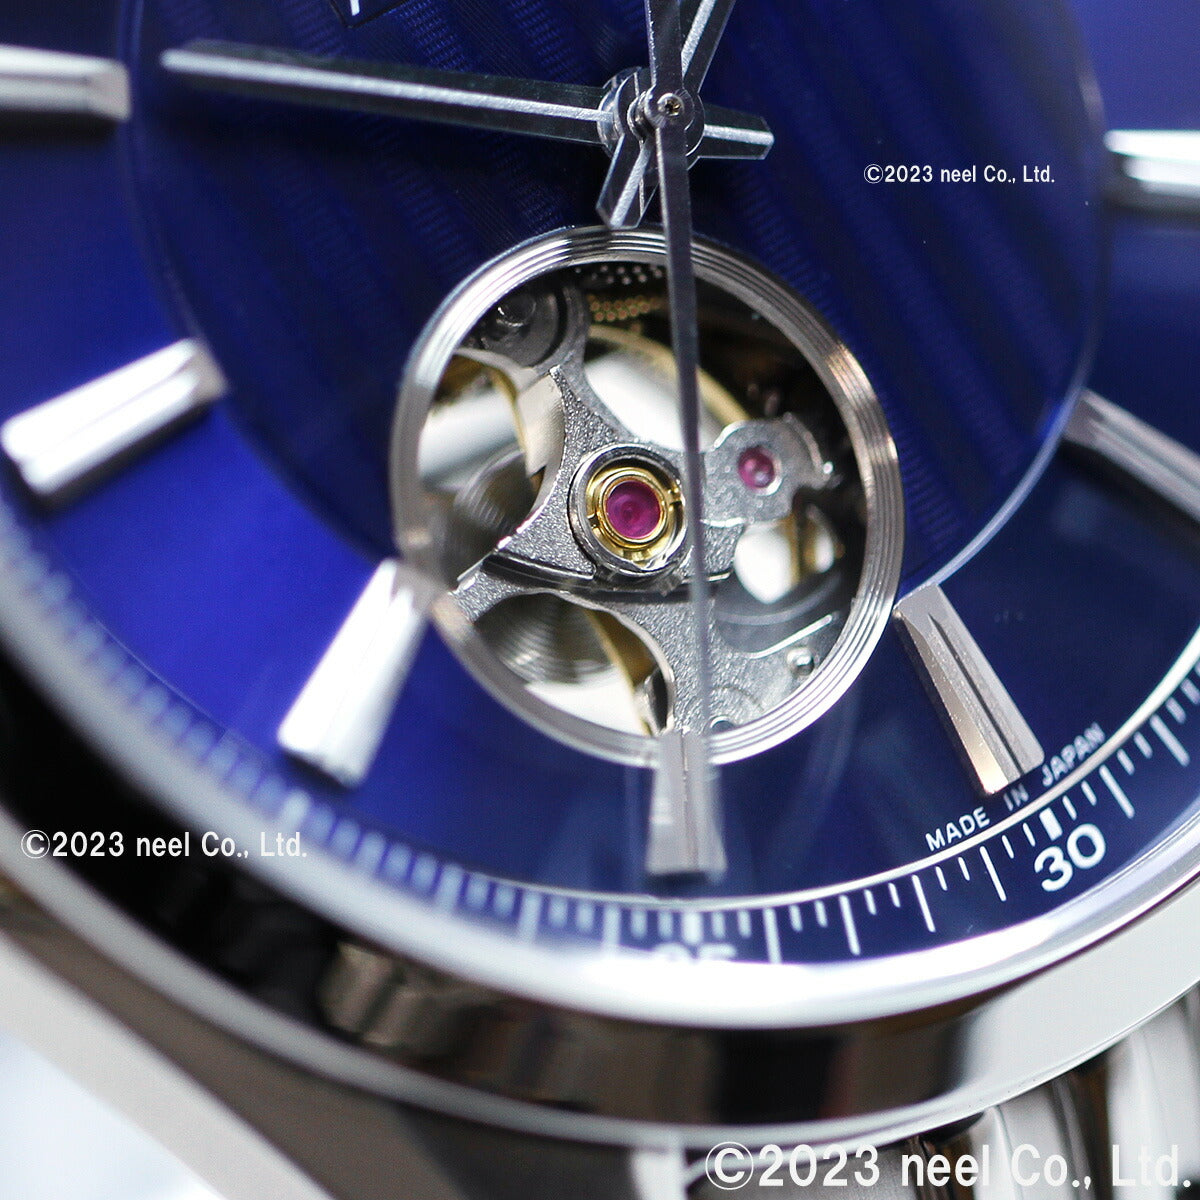 シチズンコレクション CITIZEN COLLECTION メカニカル 自動巻き 機械式 腕時計 メンズ NH9110-90L クラシックオープンハート